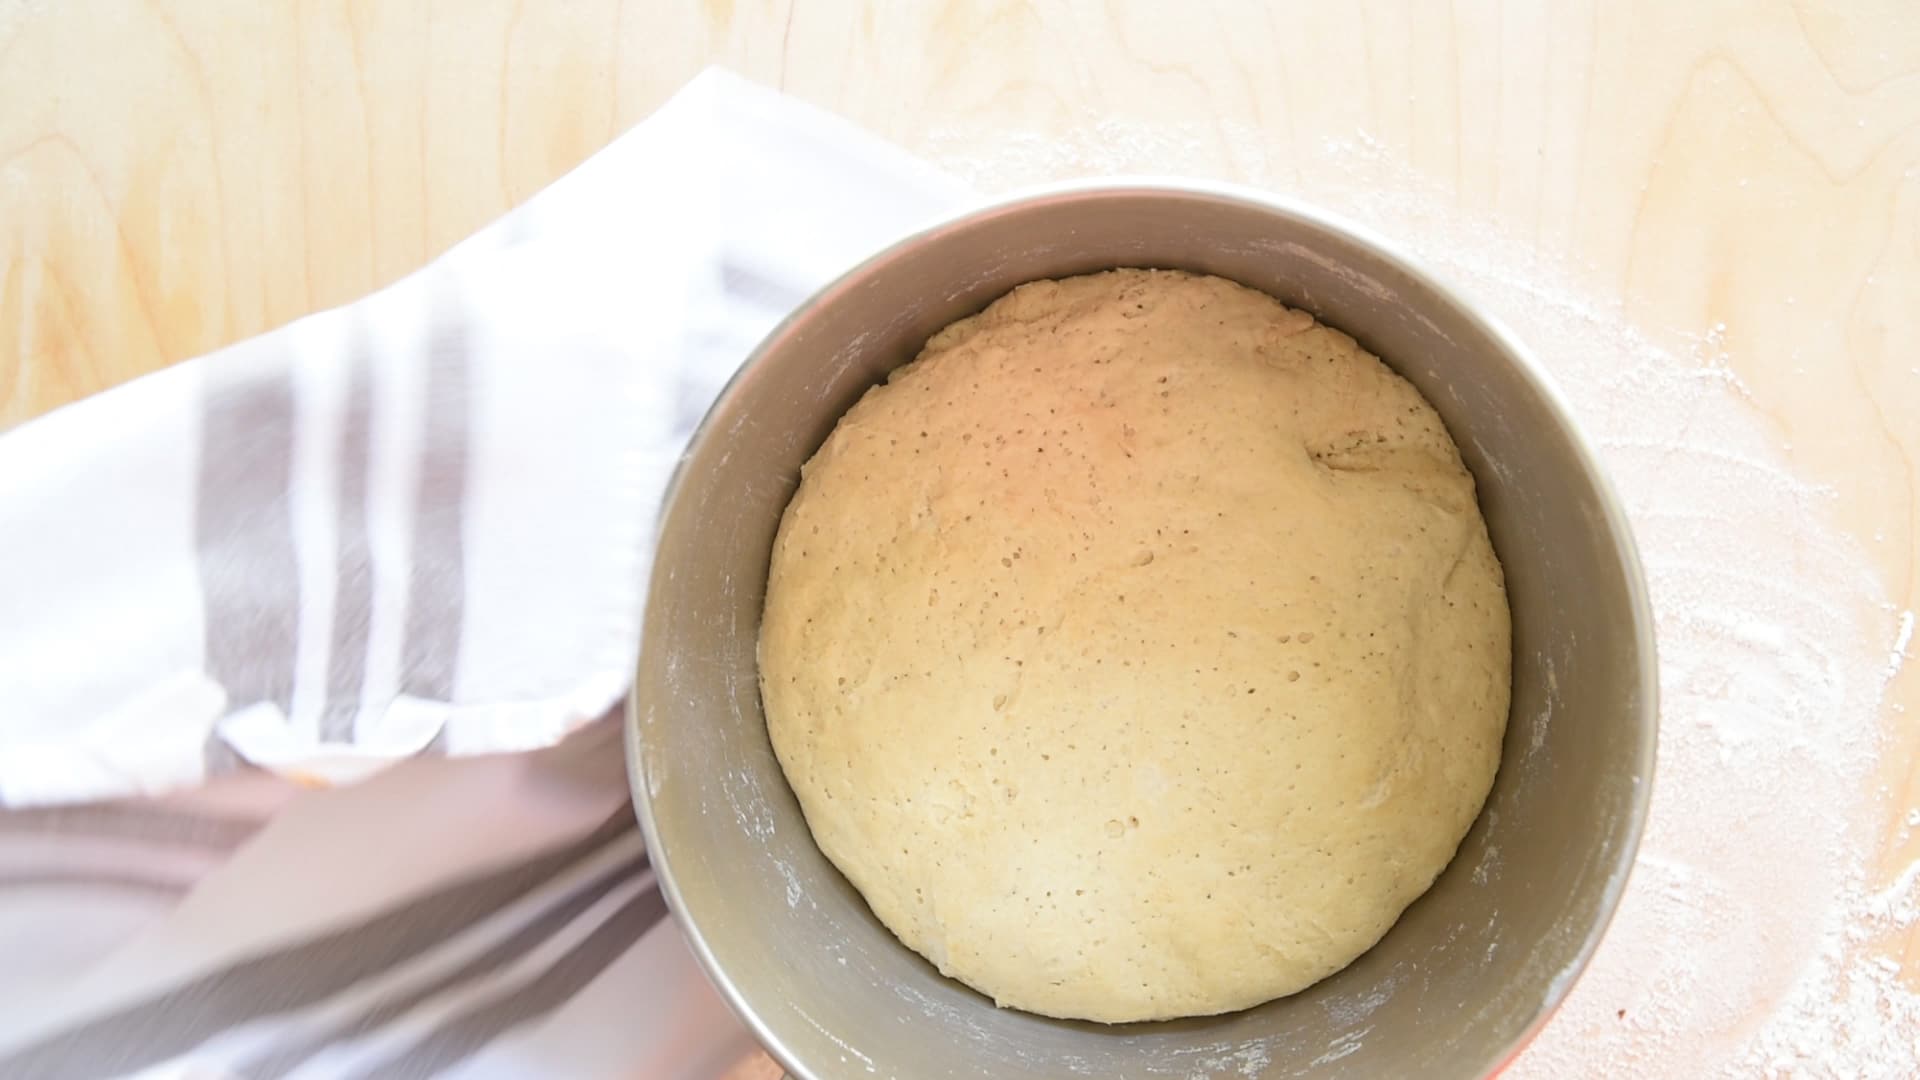 Let the dough rise